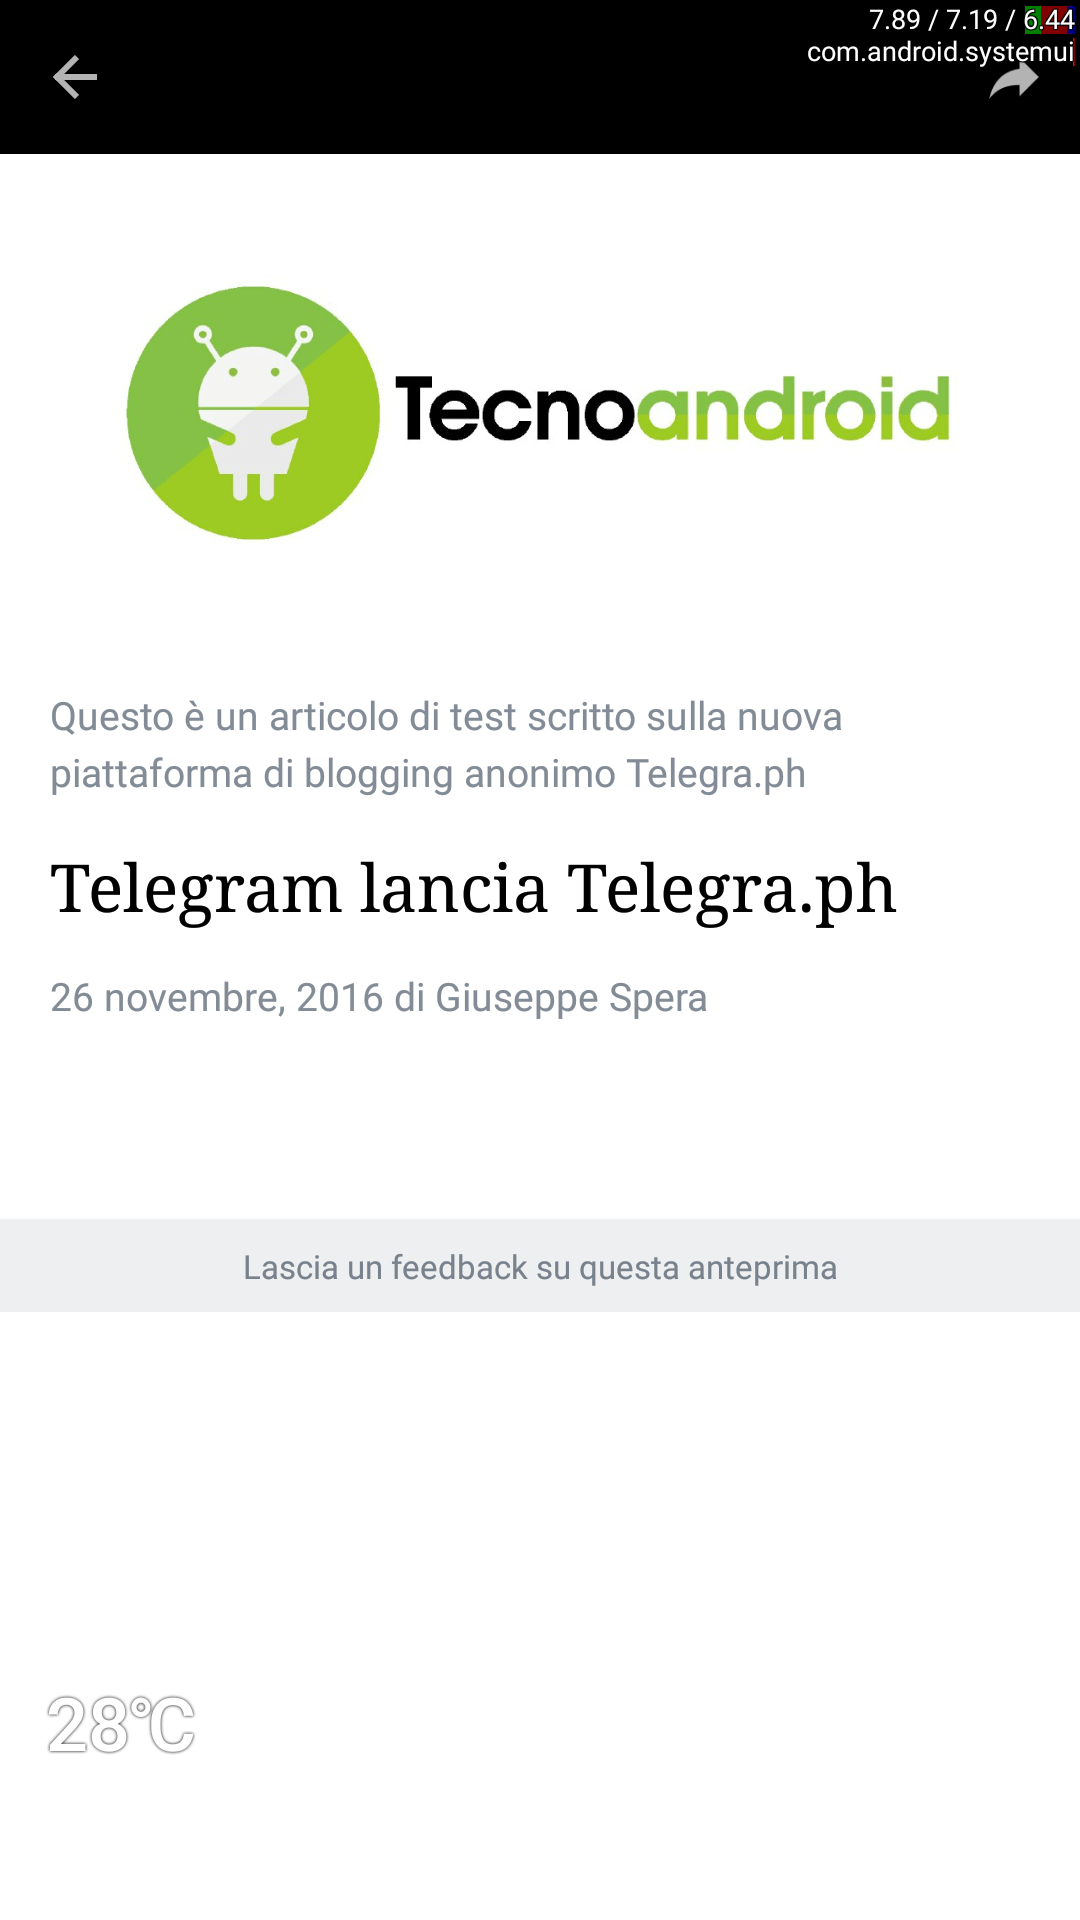 Telegram lancia Telegraph